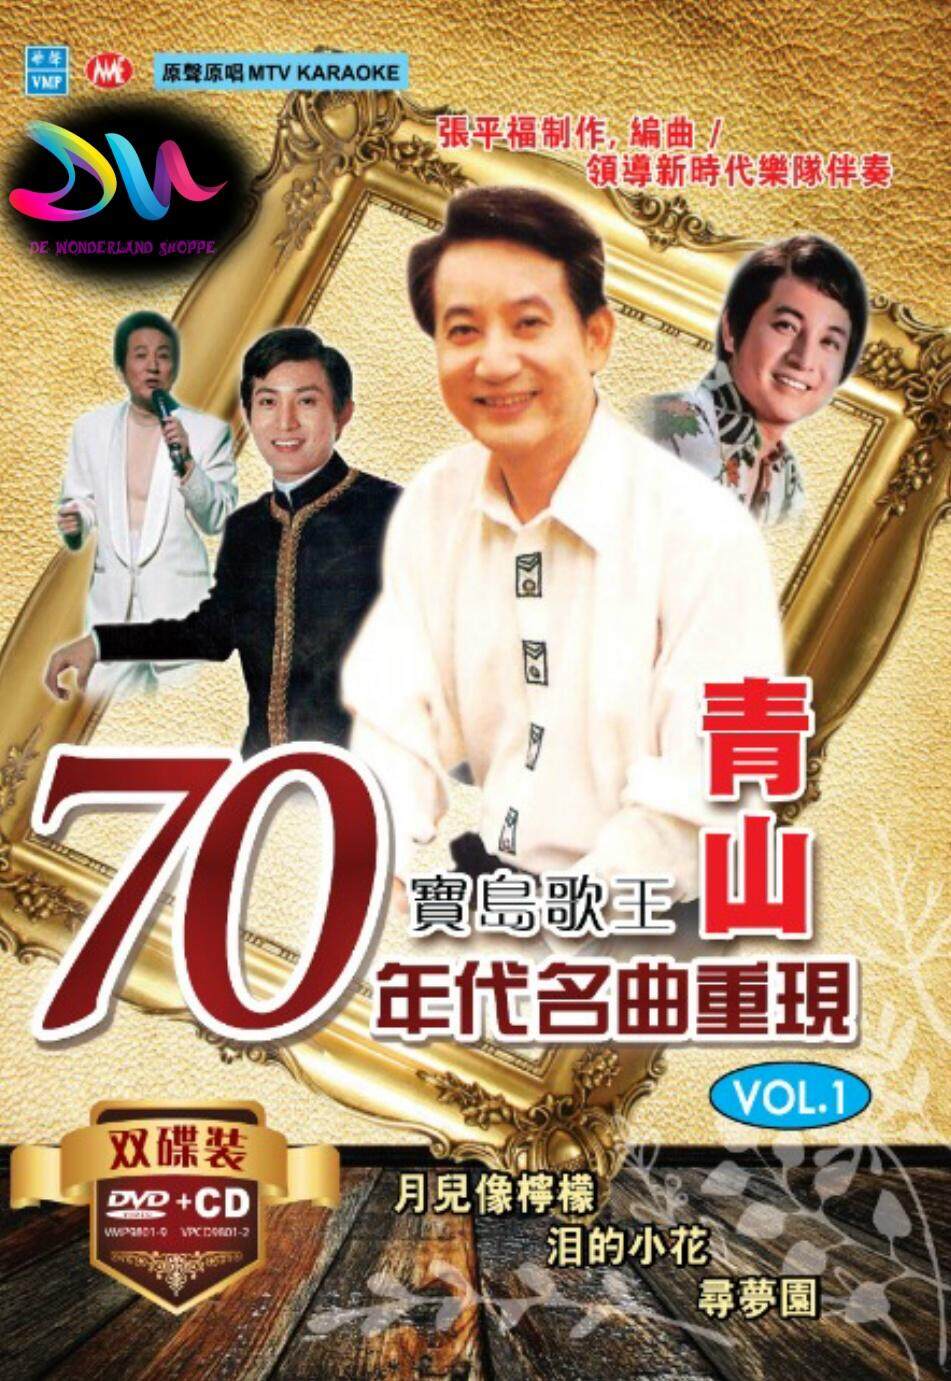 QING SHAN 青山 70 年代名曲重现 VOL. 1 DVD + CD ( MTV / KARAOKE MANDARIN SONG ) |  Lazada